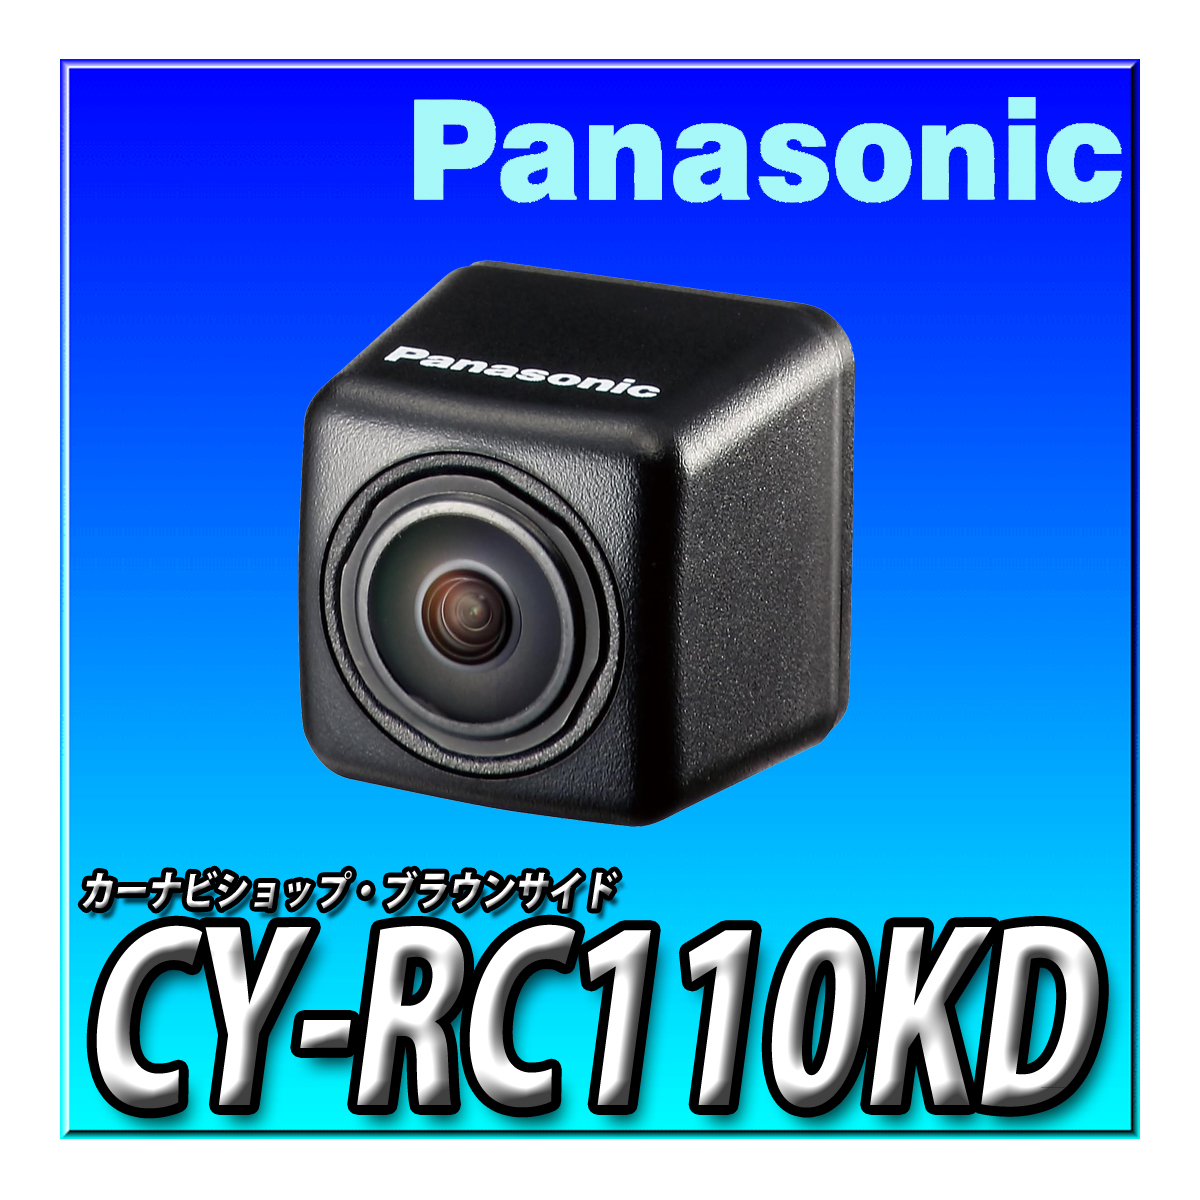 CY-RC110KD 新品未開封 パナソニック(Panasonic) バックカメラ 広視野角 高感度レンズ搭載 HDR対応 RCA端子_画像1